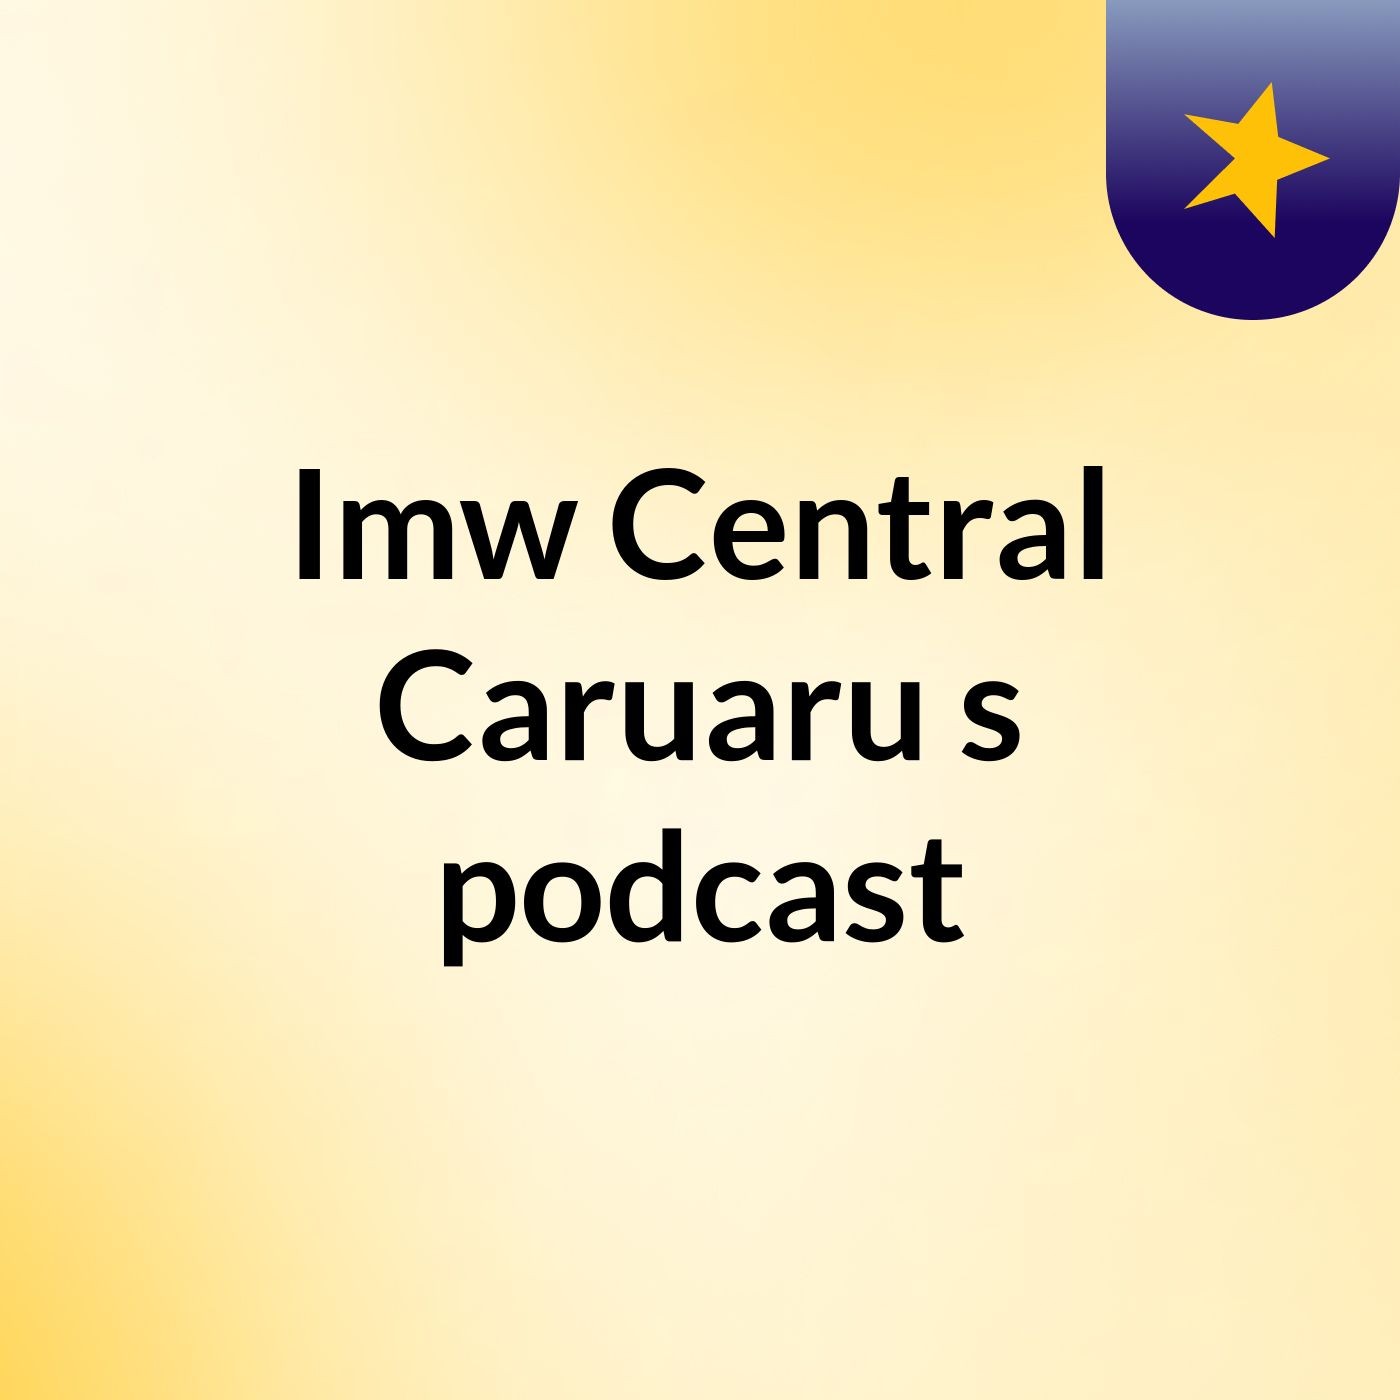 Imw Central Caruaru's podcast